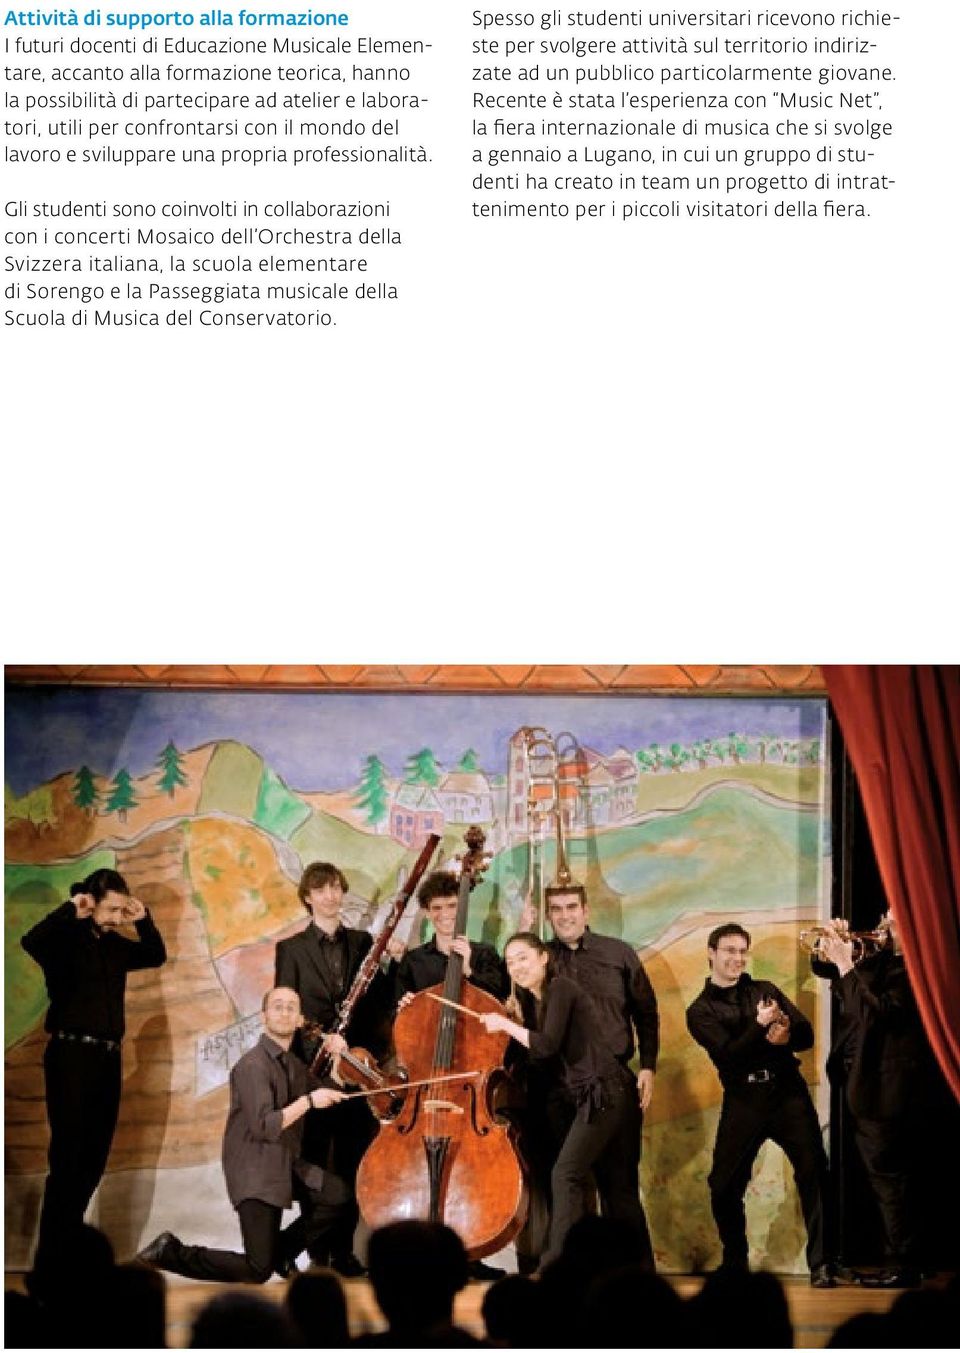 Gli studenti sono coinvolti in collaborazioni con i concerti Mosaico dell Orchestra della Svizzera italiana, la scuola elementare di Sorengo e la Passeggiata musicale della Scuola di Musica del